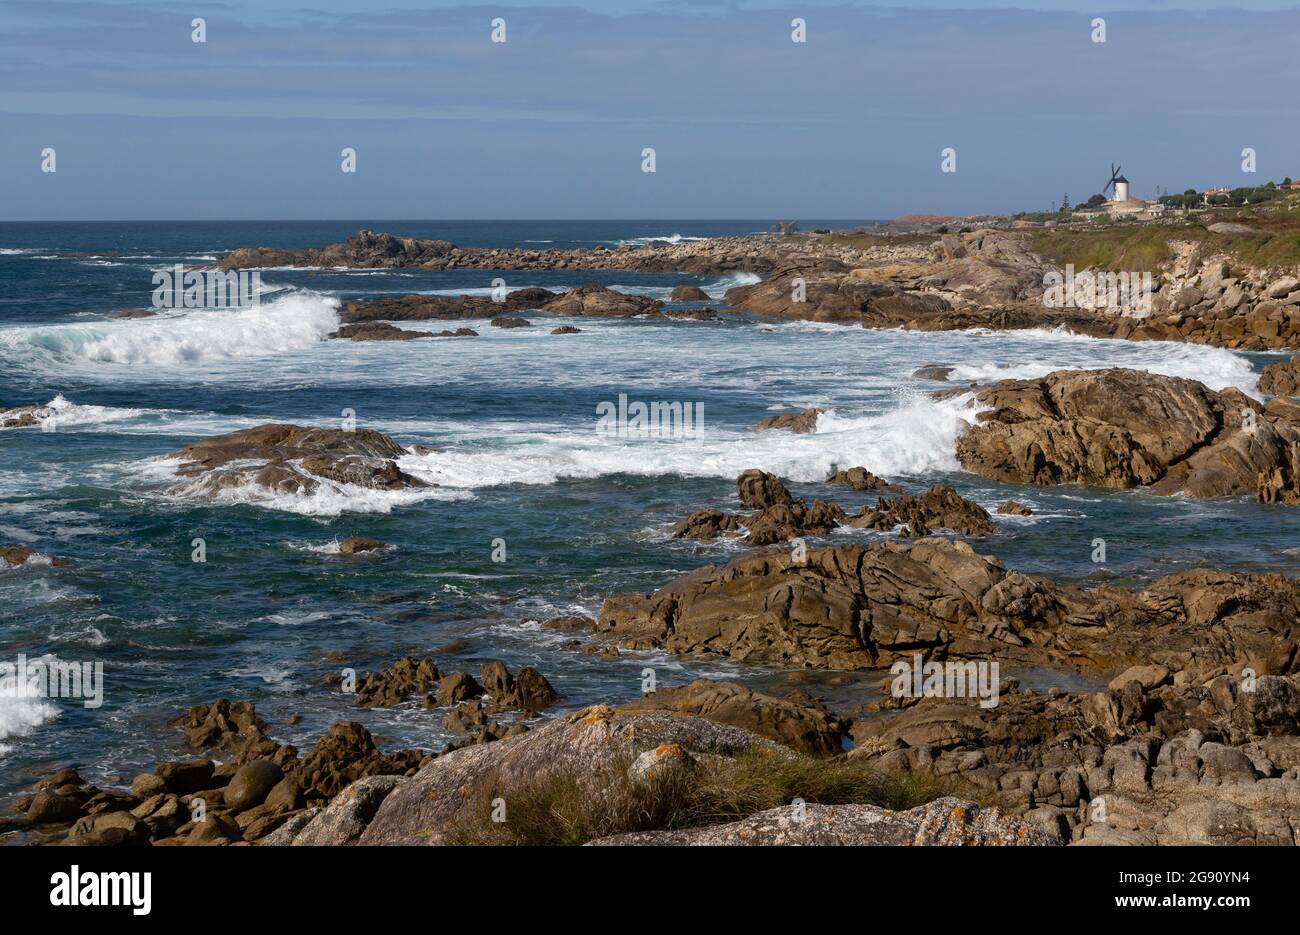 Vista de la costa de Oia con el océano Atlántico y un molino de viento. Stock Photo